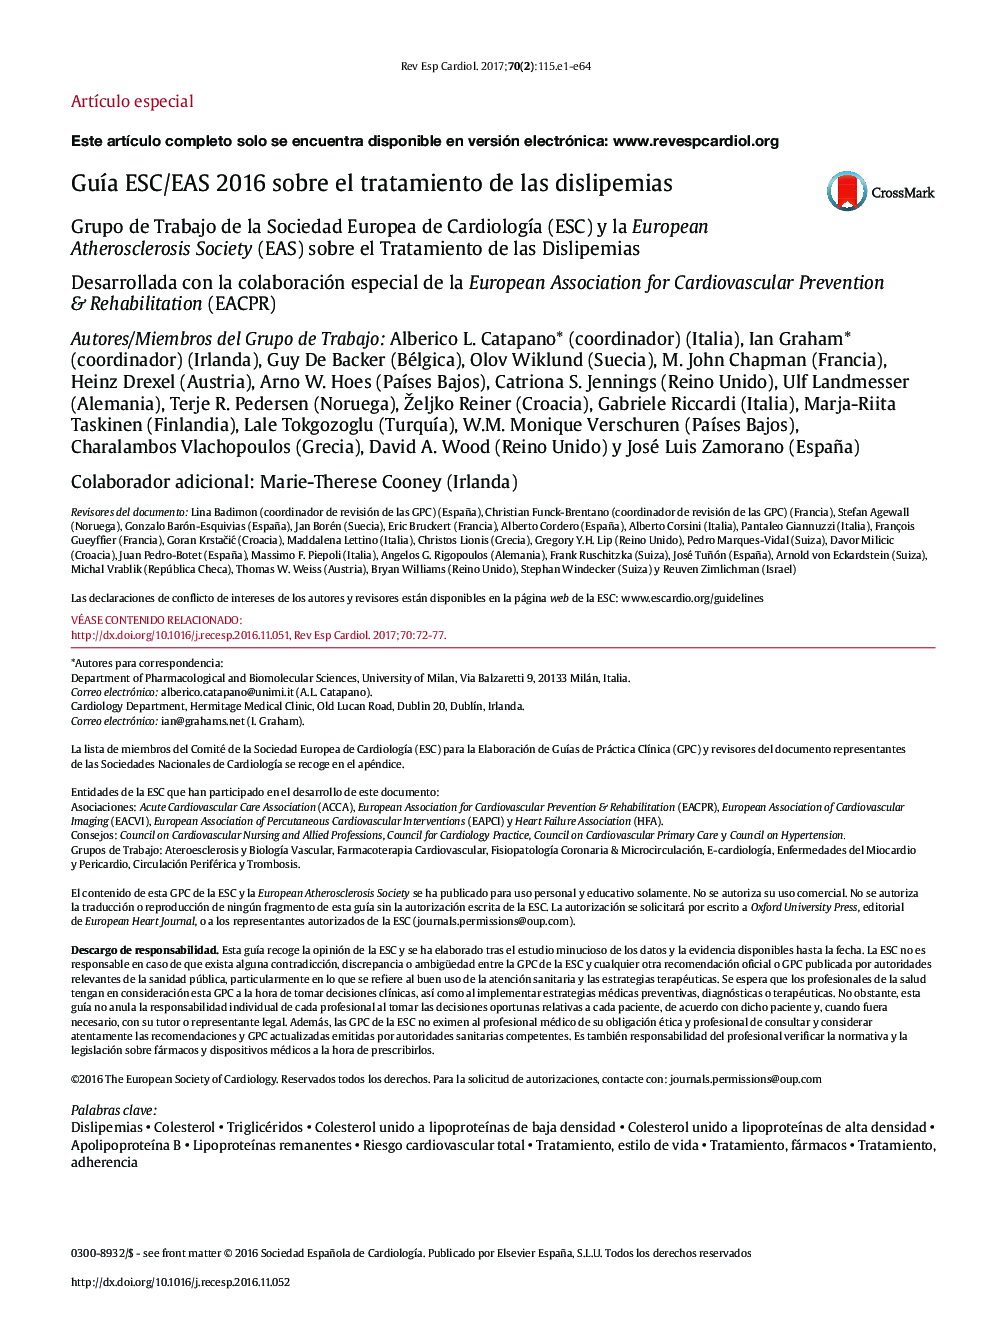 GuÃ­a ESC/EAS 2016 sobre el tratamiento de las dislipemias